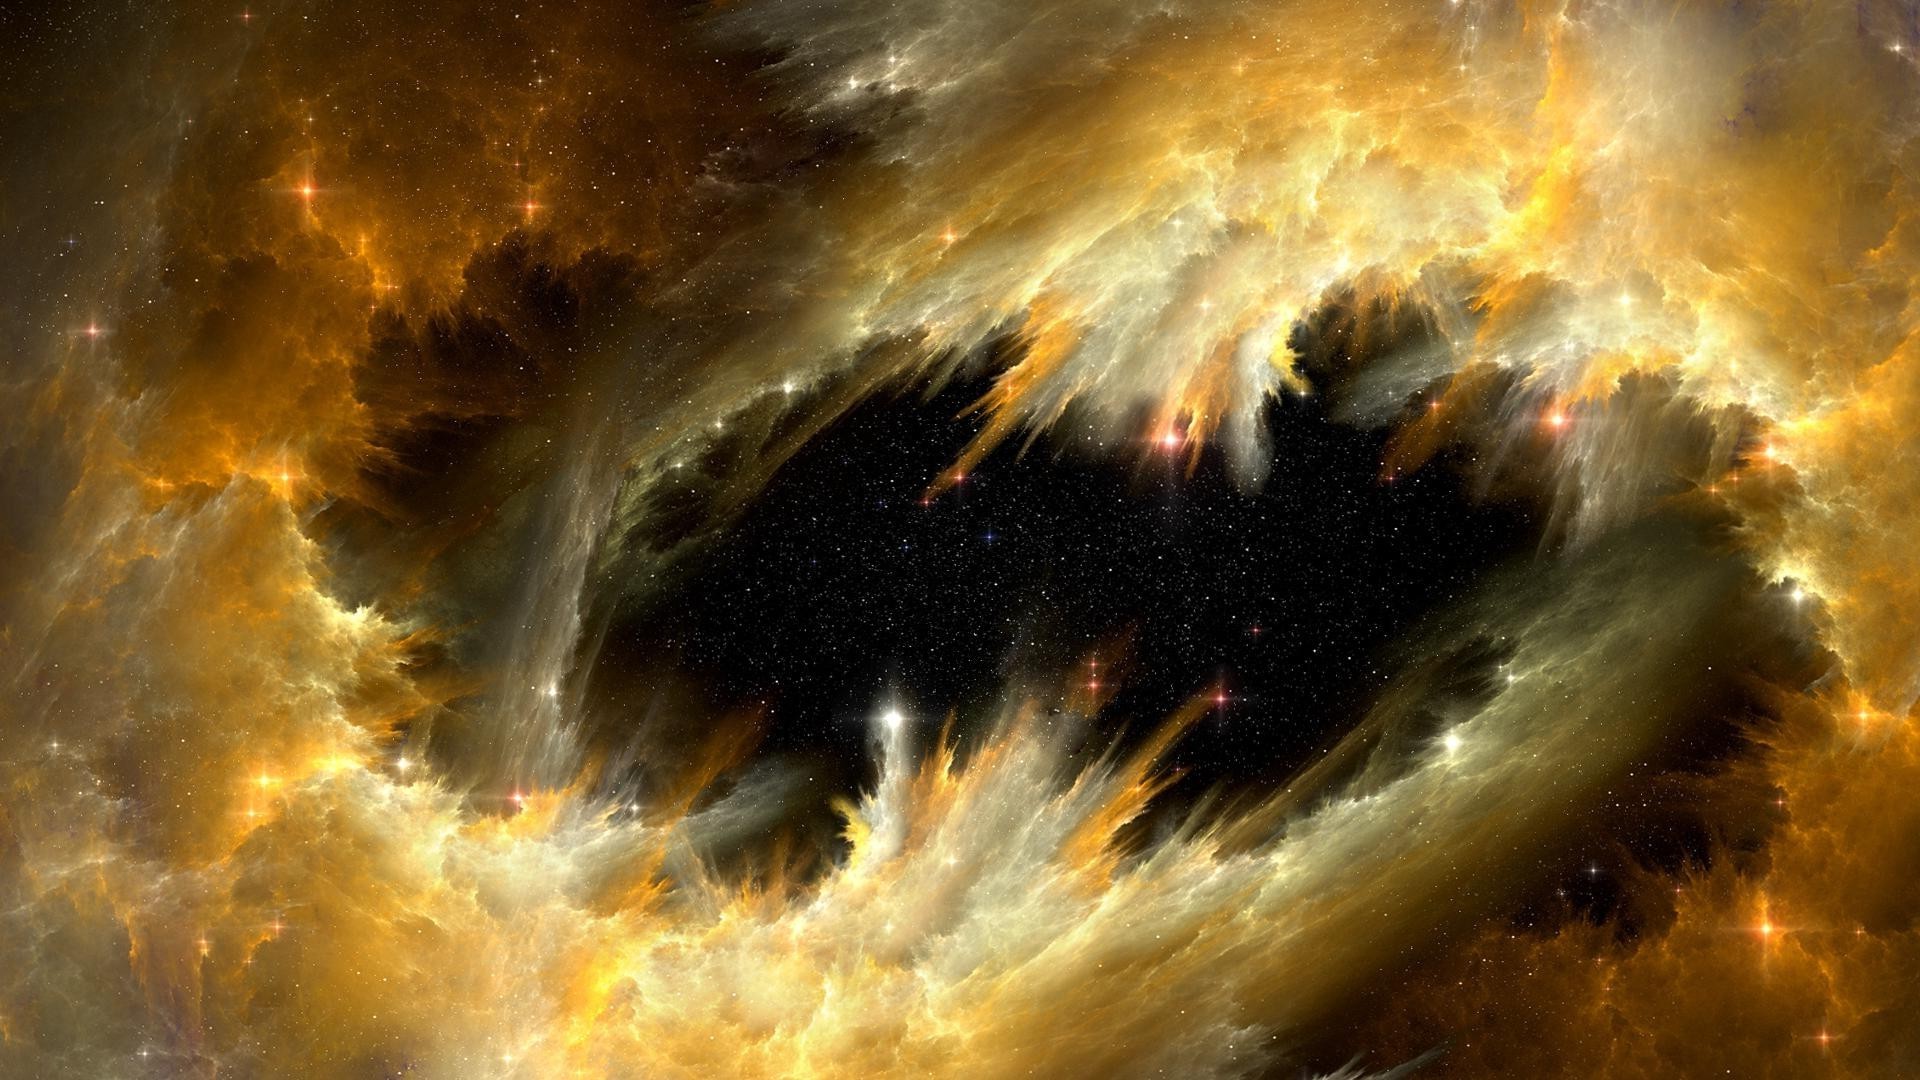 галактики фантазия сюрреалистично астрономия небо шарообразные пространство бесконечность люминесценция солнце создание луна фантастика туман наука образы аннотация плазмы свет мечта